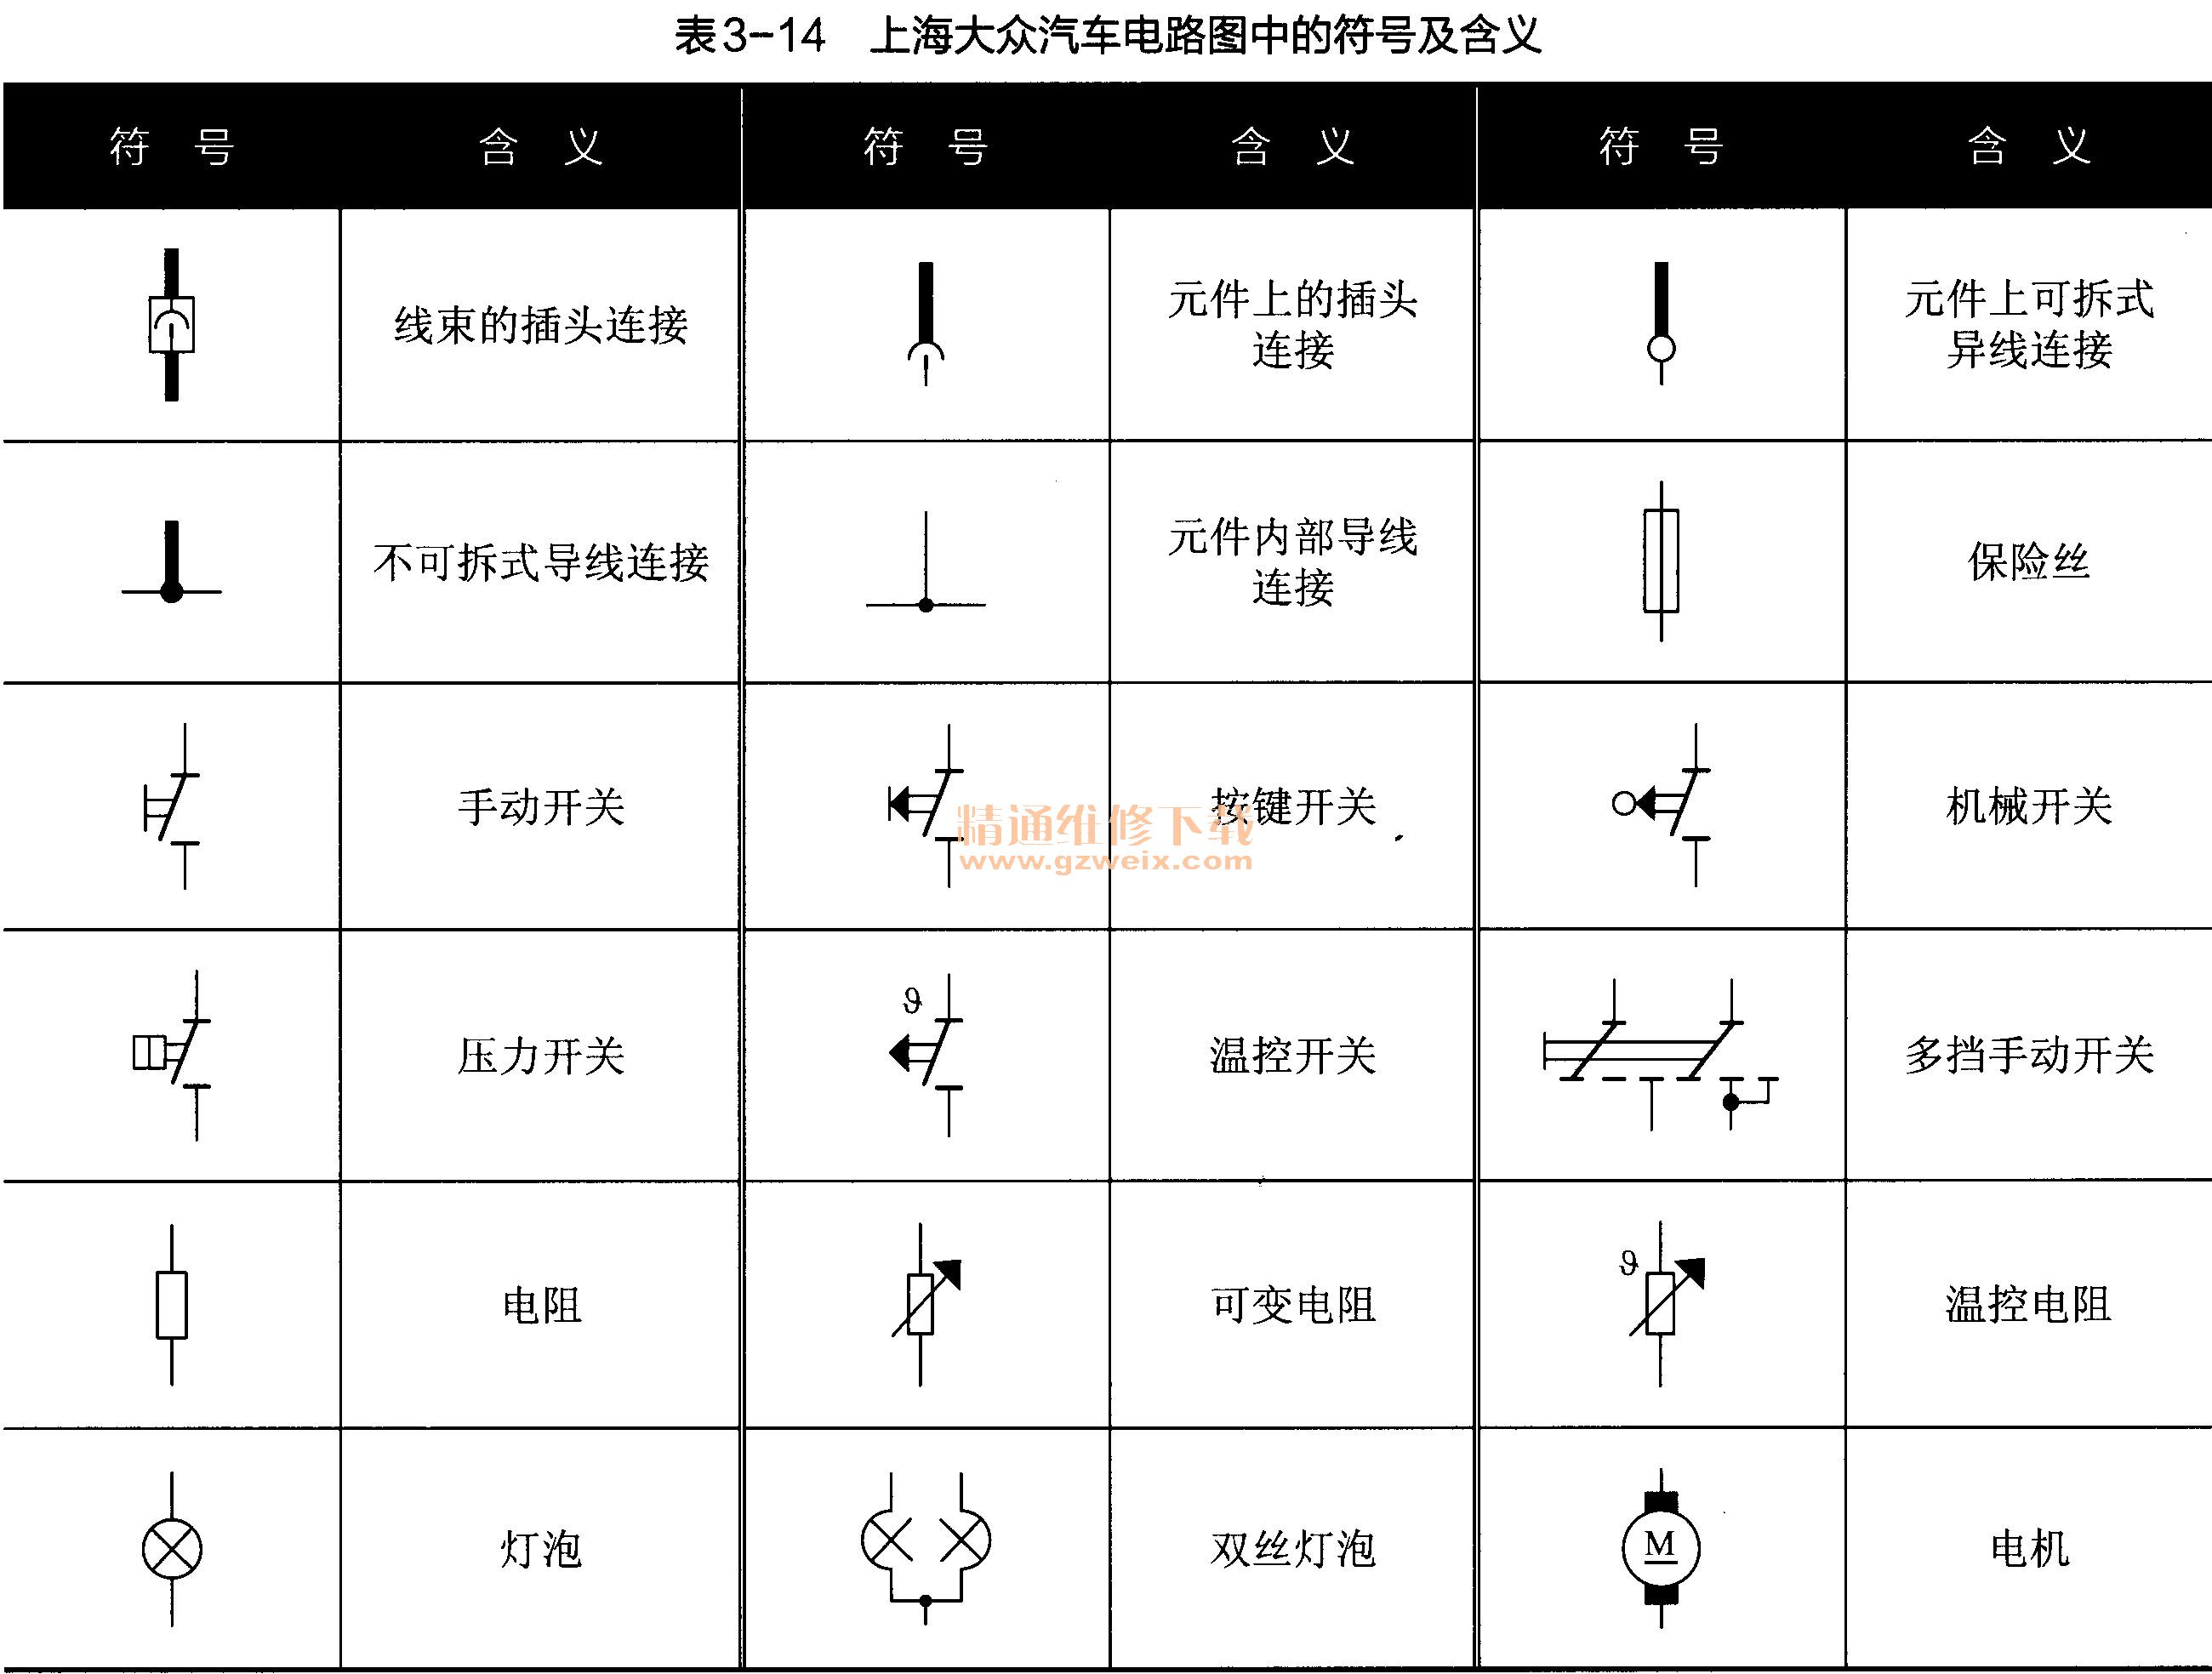 上海大众汽车电路图中的符号及含义